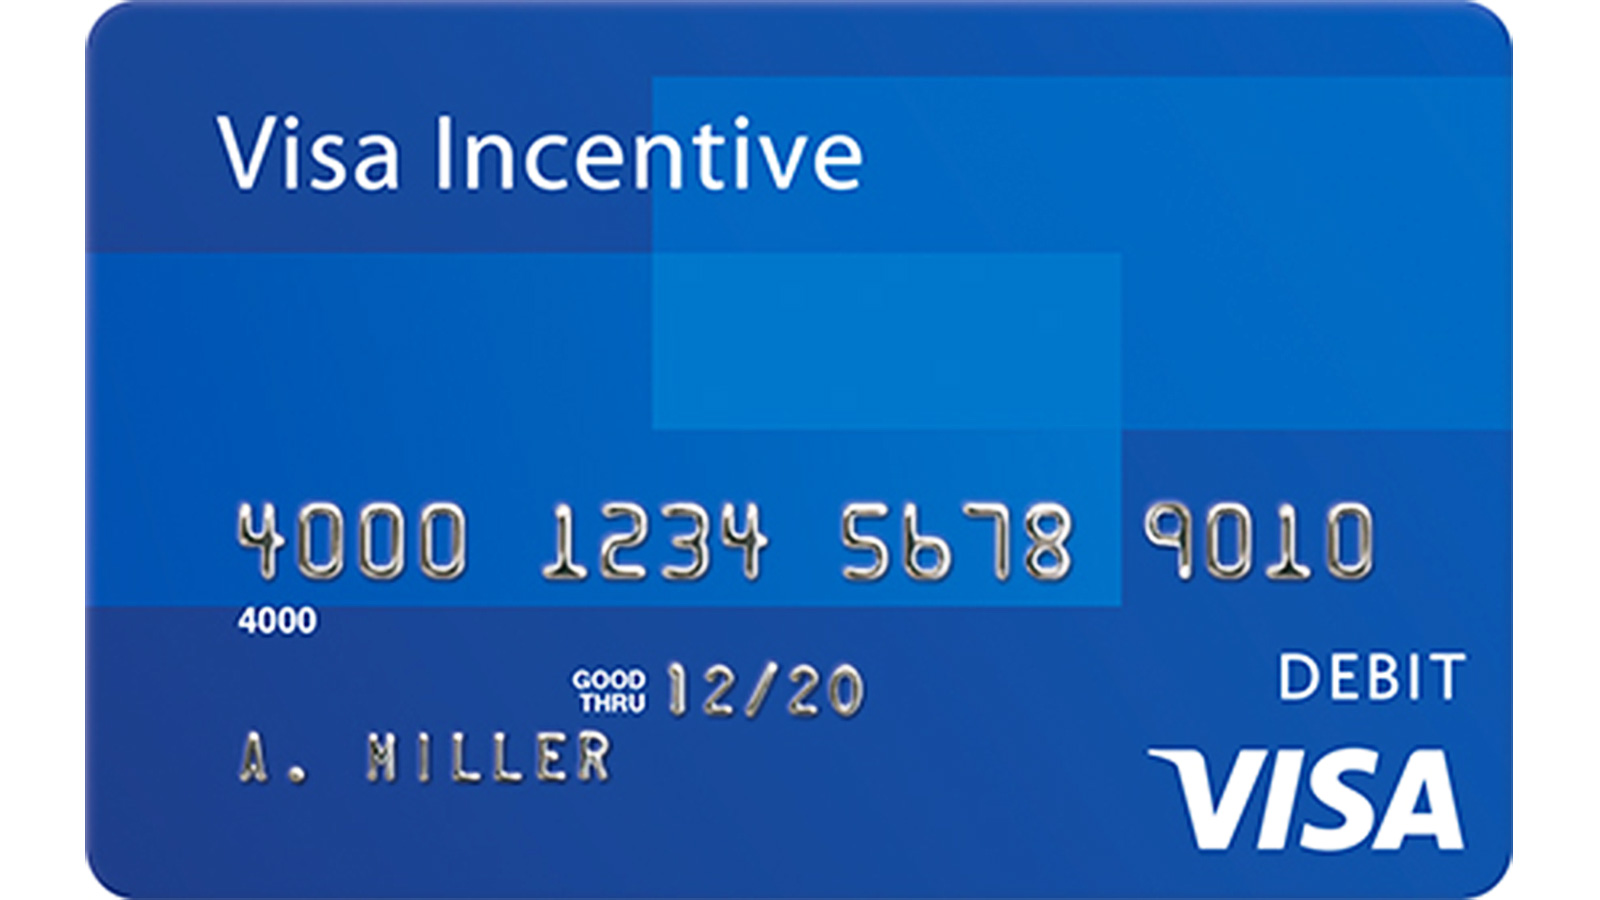 Visa Incentive card sample.